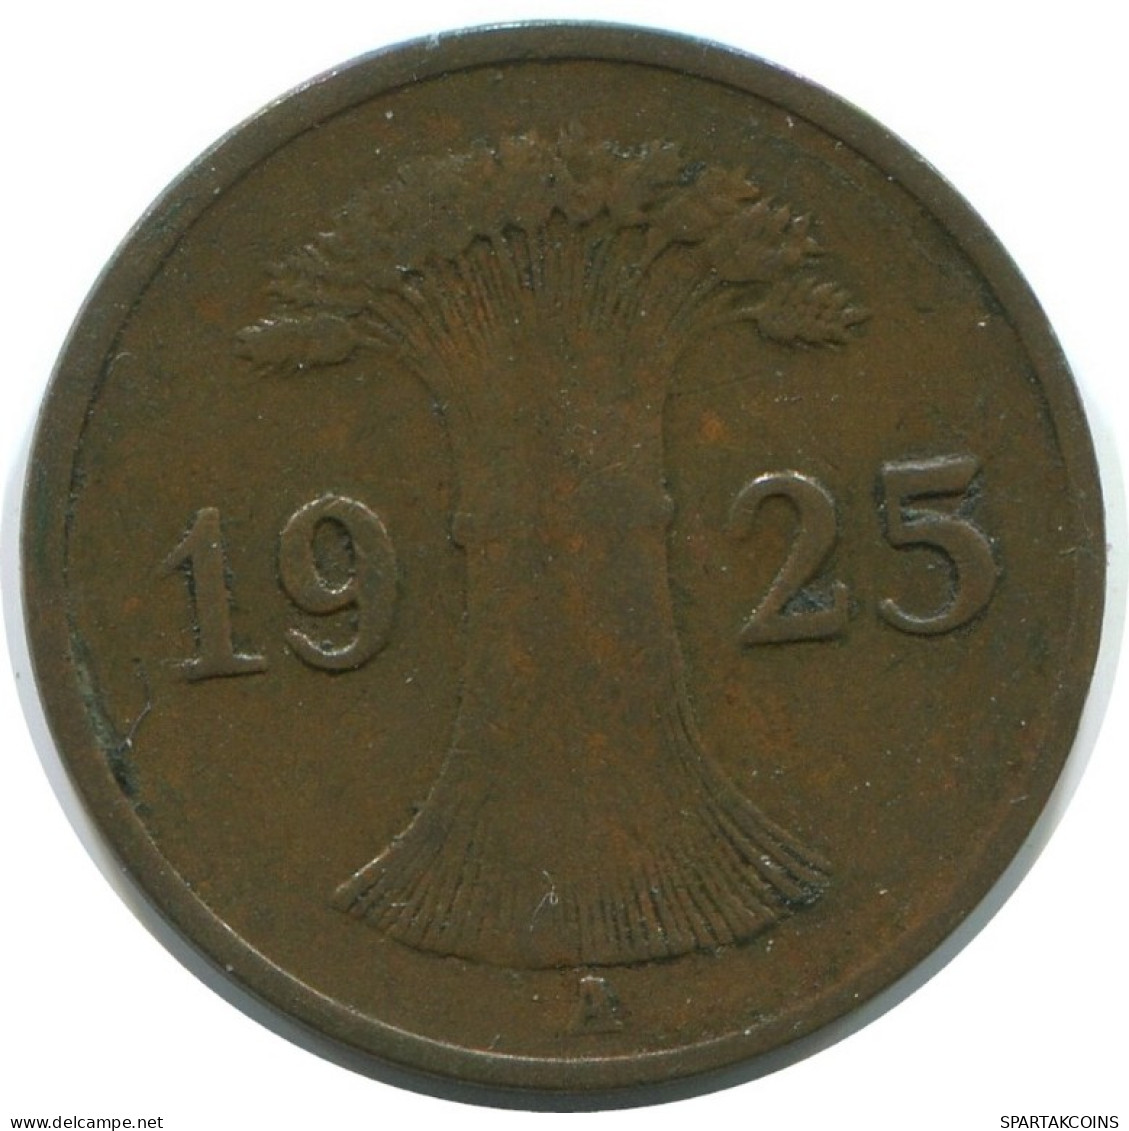 1 REICHSPFENNIG 1925 A ALEMANIA Moneda GERMANY #AE227.E.A - 1 Renten- & 1 Reichspfennig